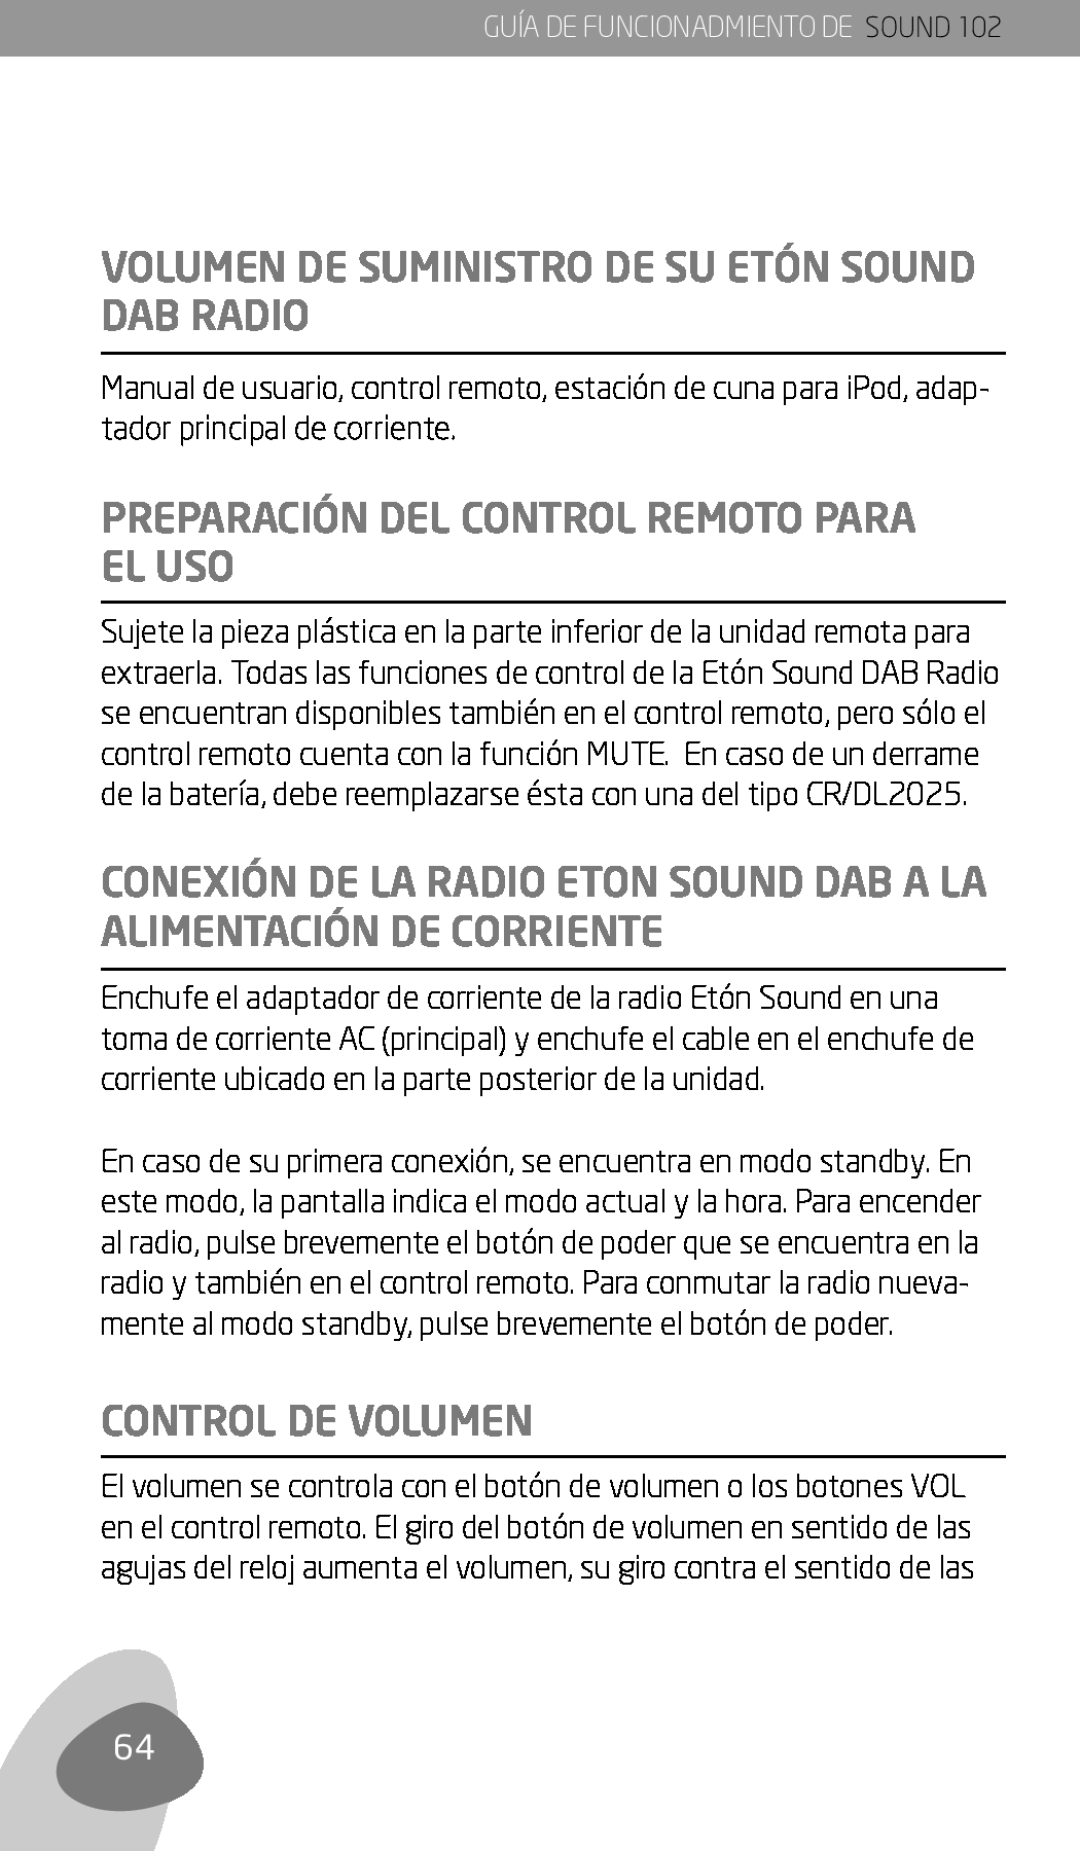 Eton 102 Volumen de suministro de su EtÓn Sound DAB Radio, Preparación del control remoto para el uso, Control de volumen 